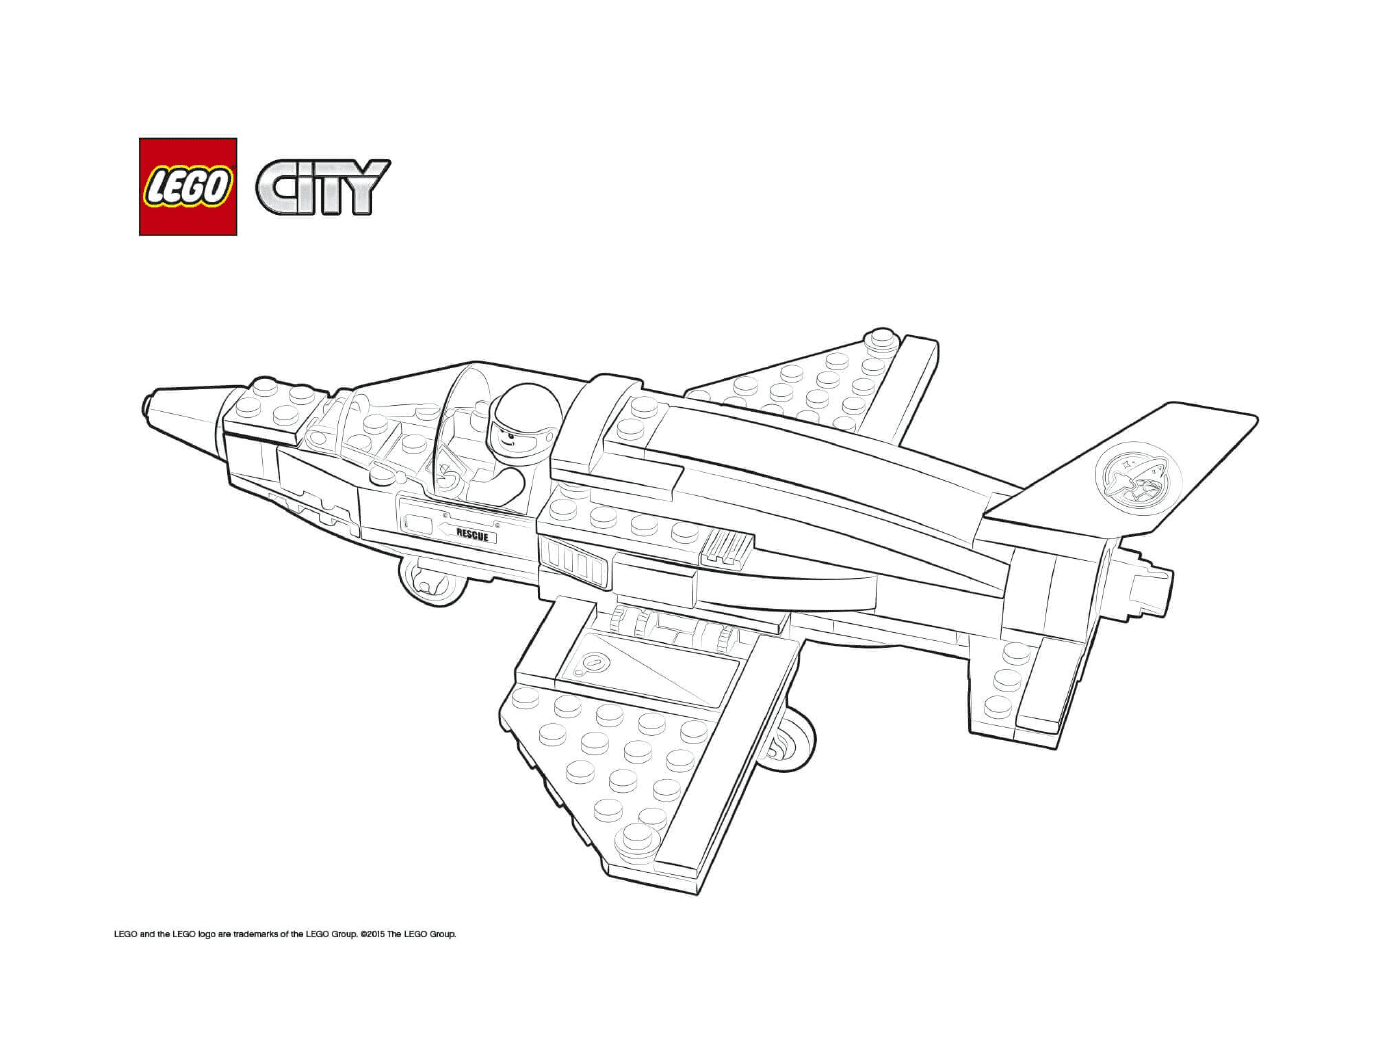  Companhias Aéreas Lego City Rescue Training Jet Carrier 